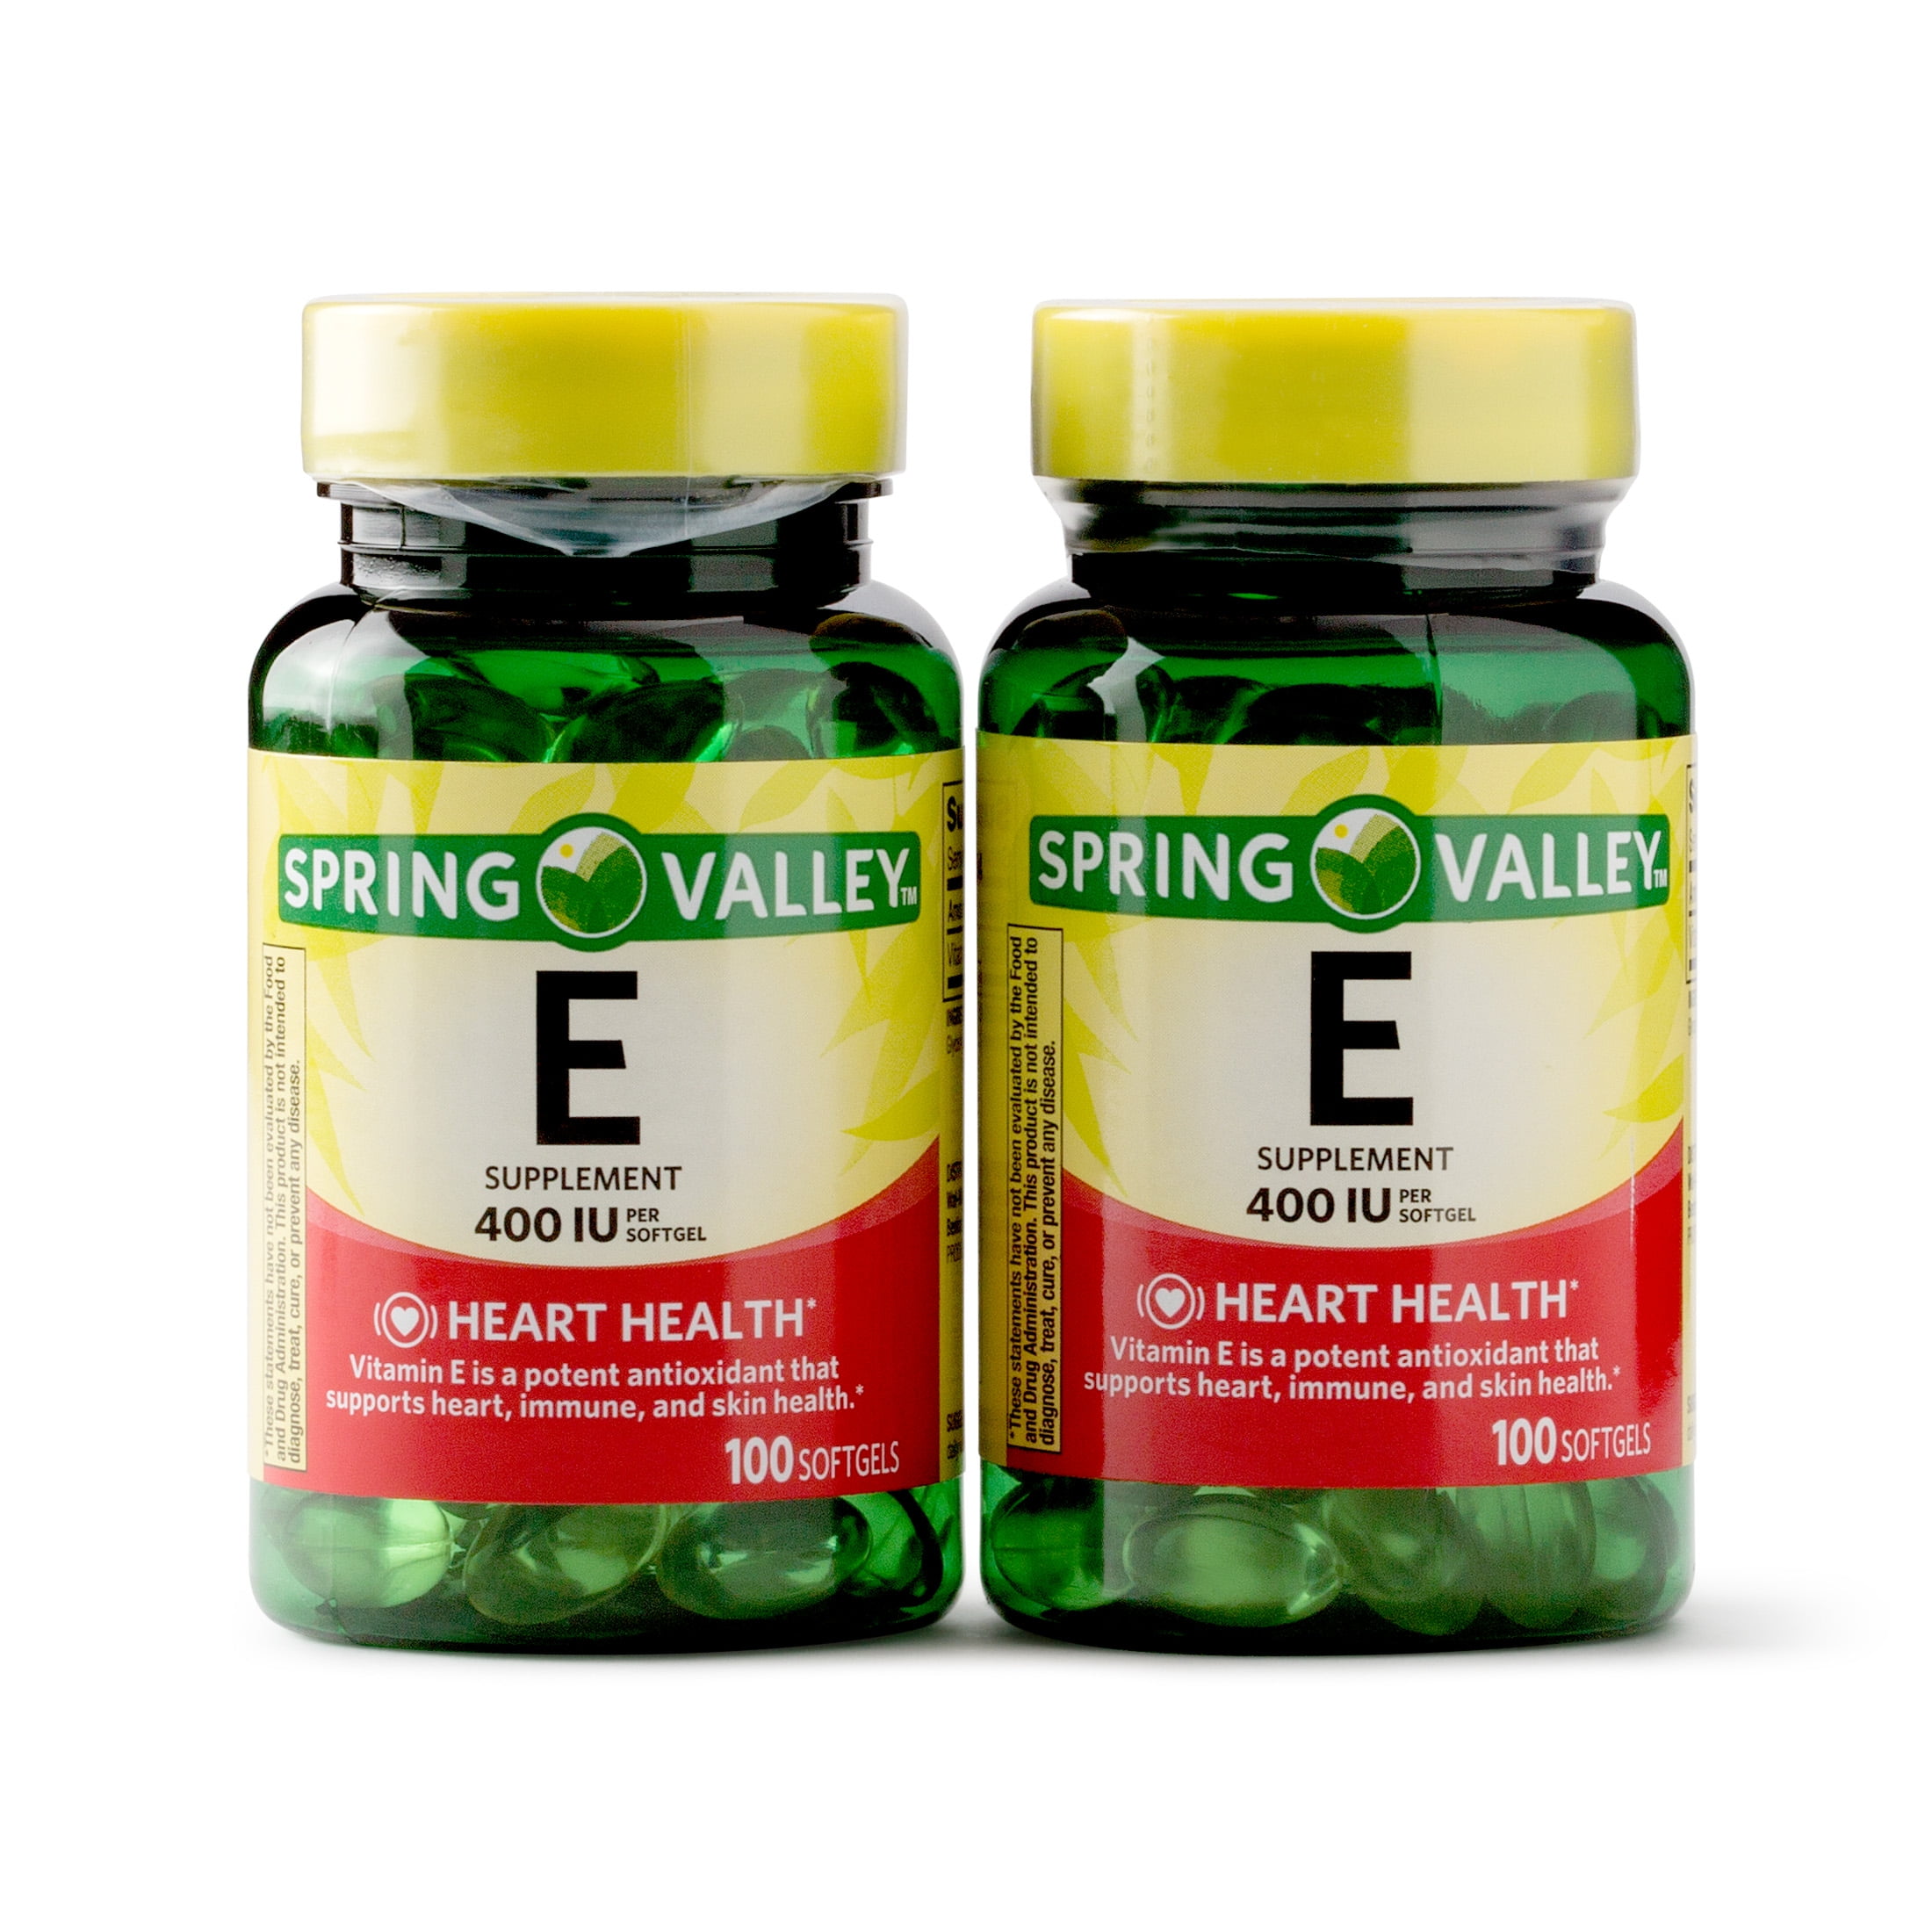 Spring Valley Vitamin E Vitamins Supplements 1 Softgel 0 Ct 2 Pack Walmart Com Walmart Com